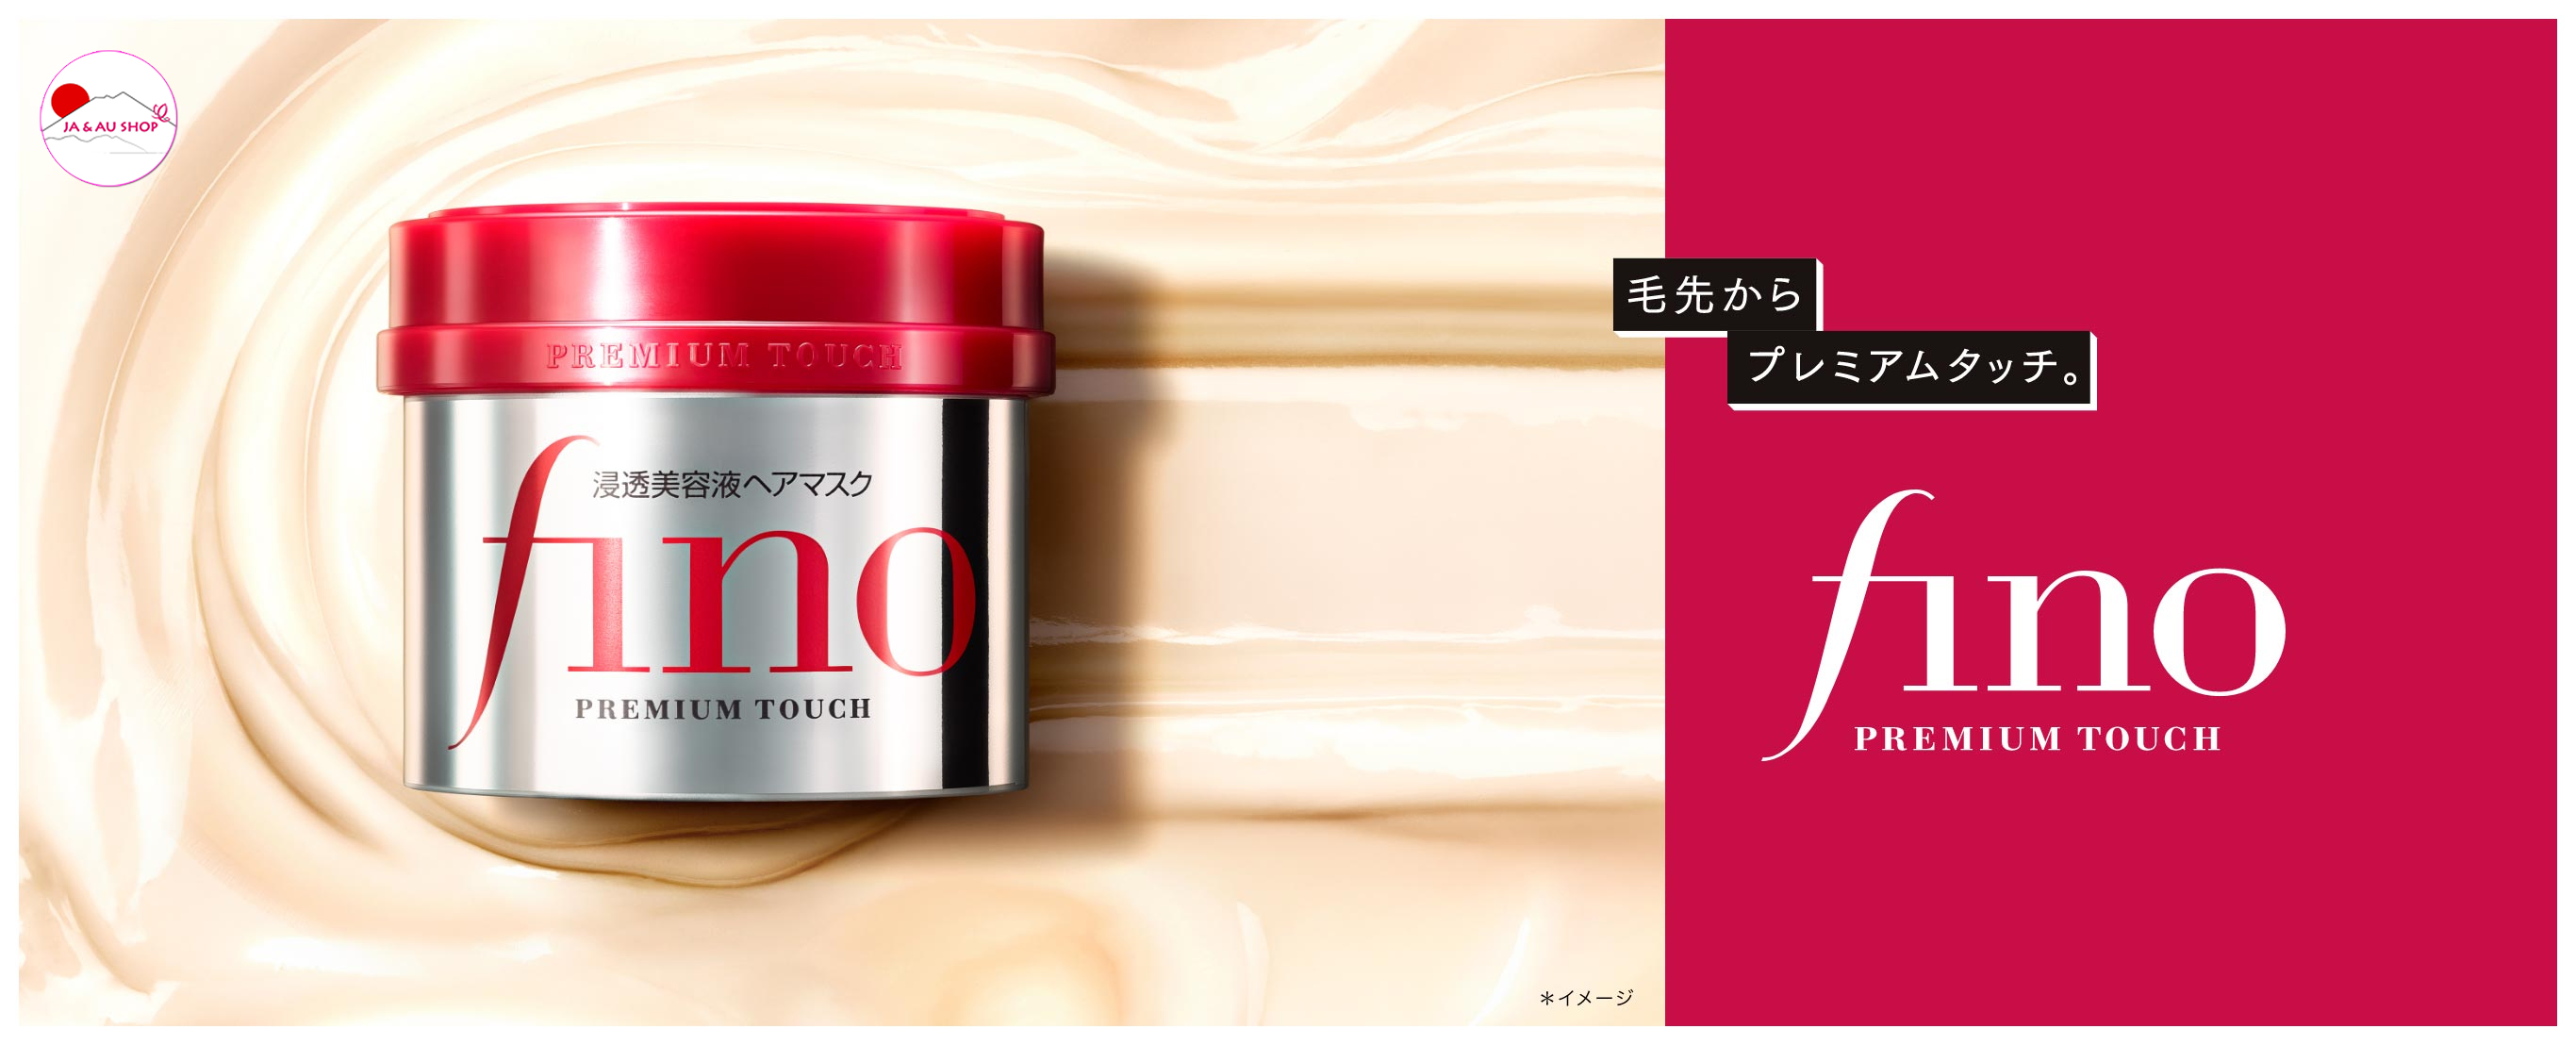 Ủ tóc Fino Shiseido Nhật Bản 230g 3